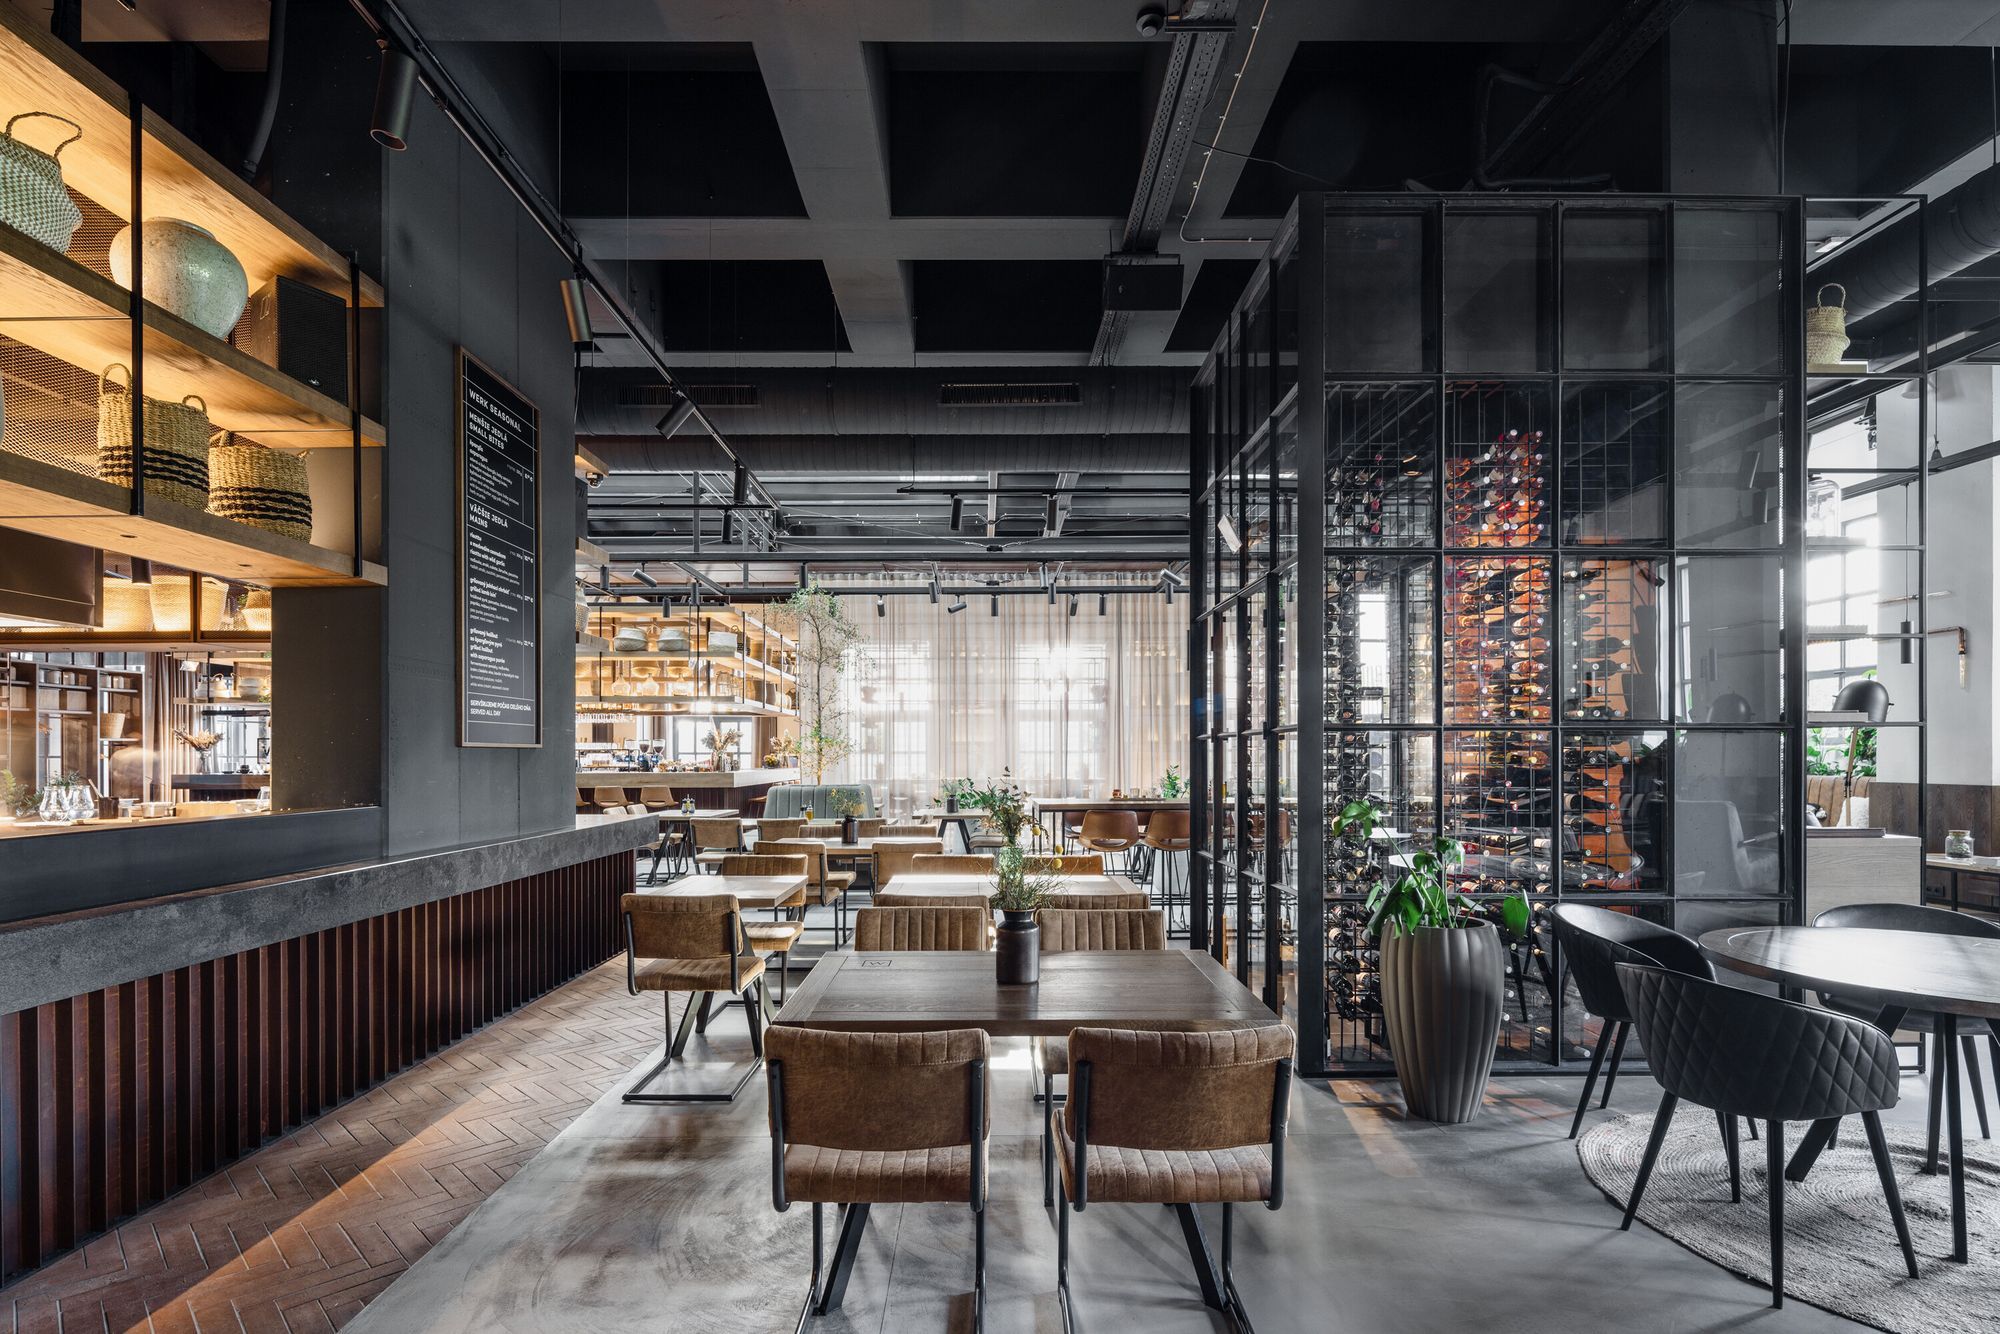 Combining industrial heritage and modern design: introducing WERK restaurant in Bratislava